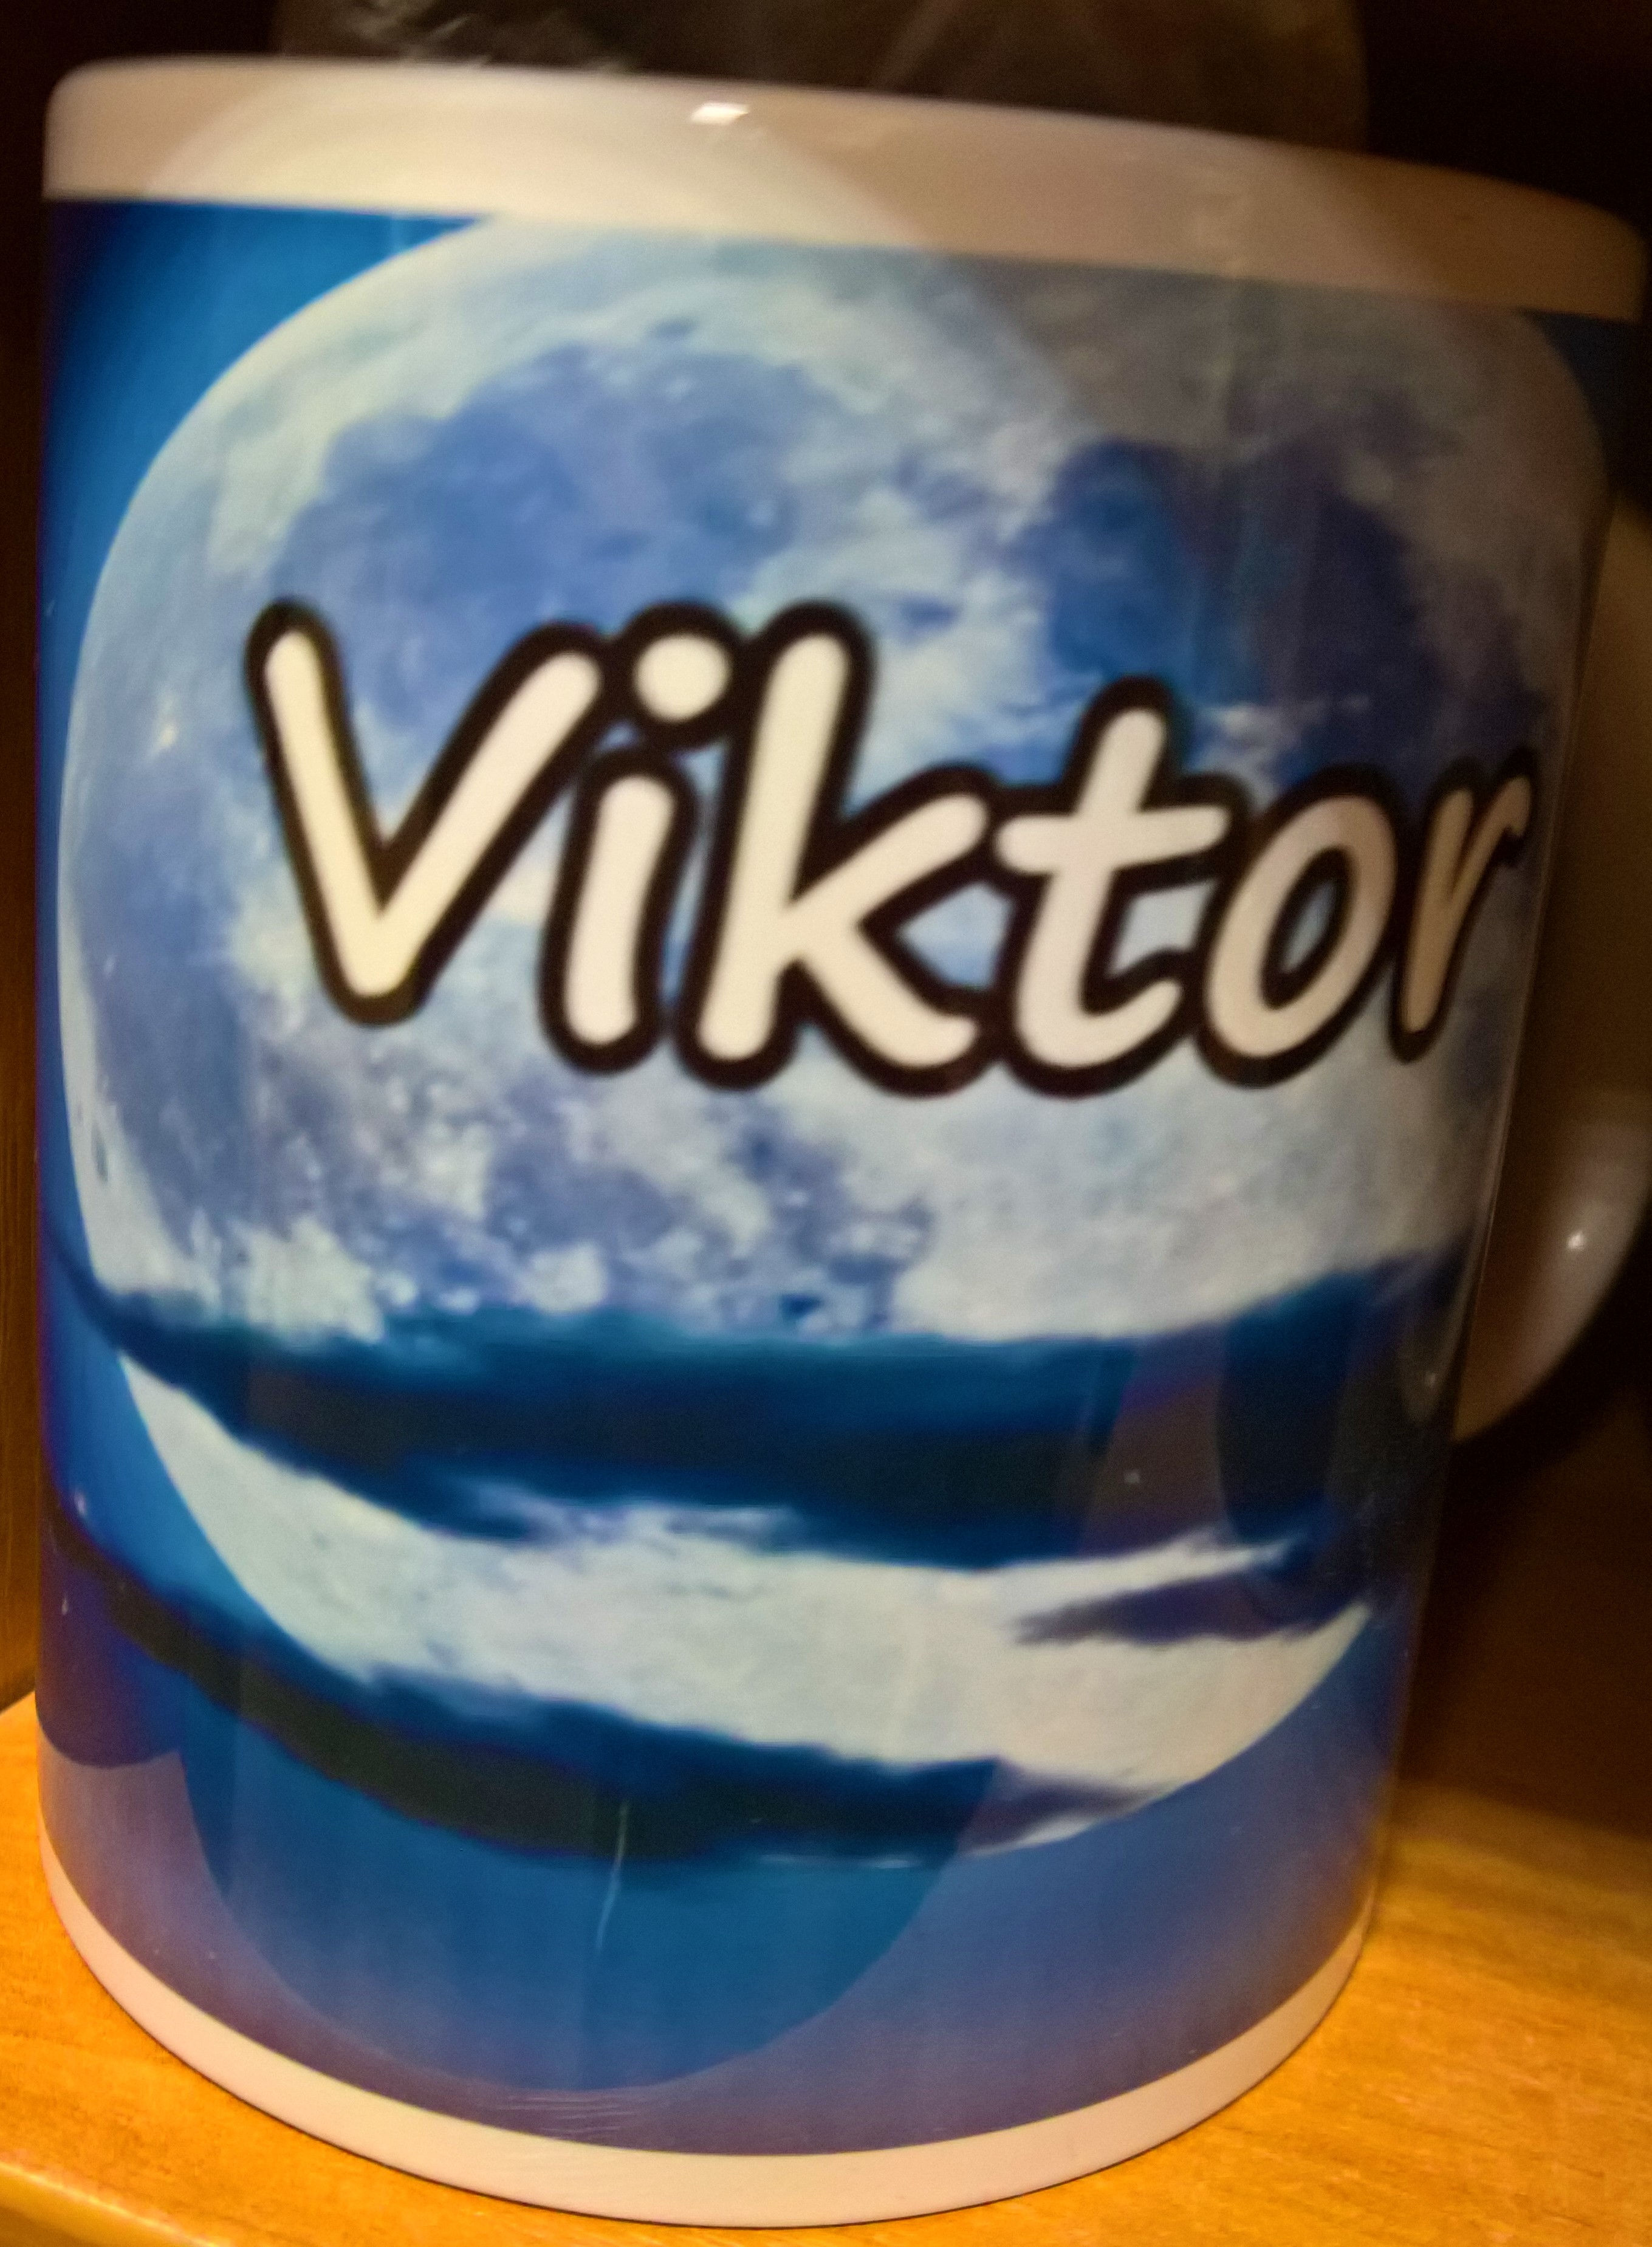 Hrnček "Viktor"